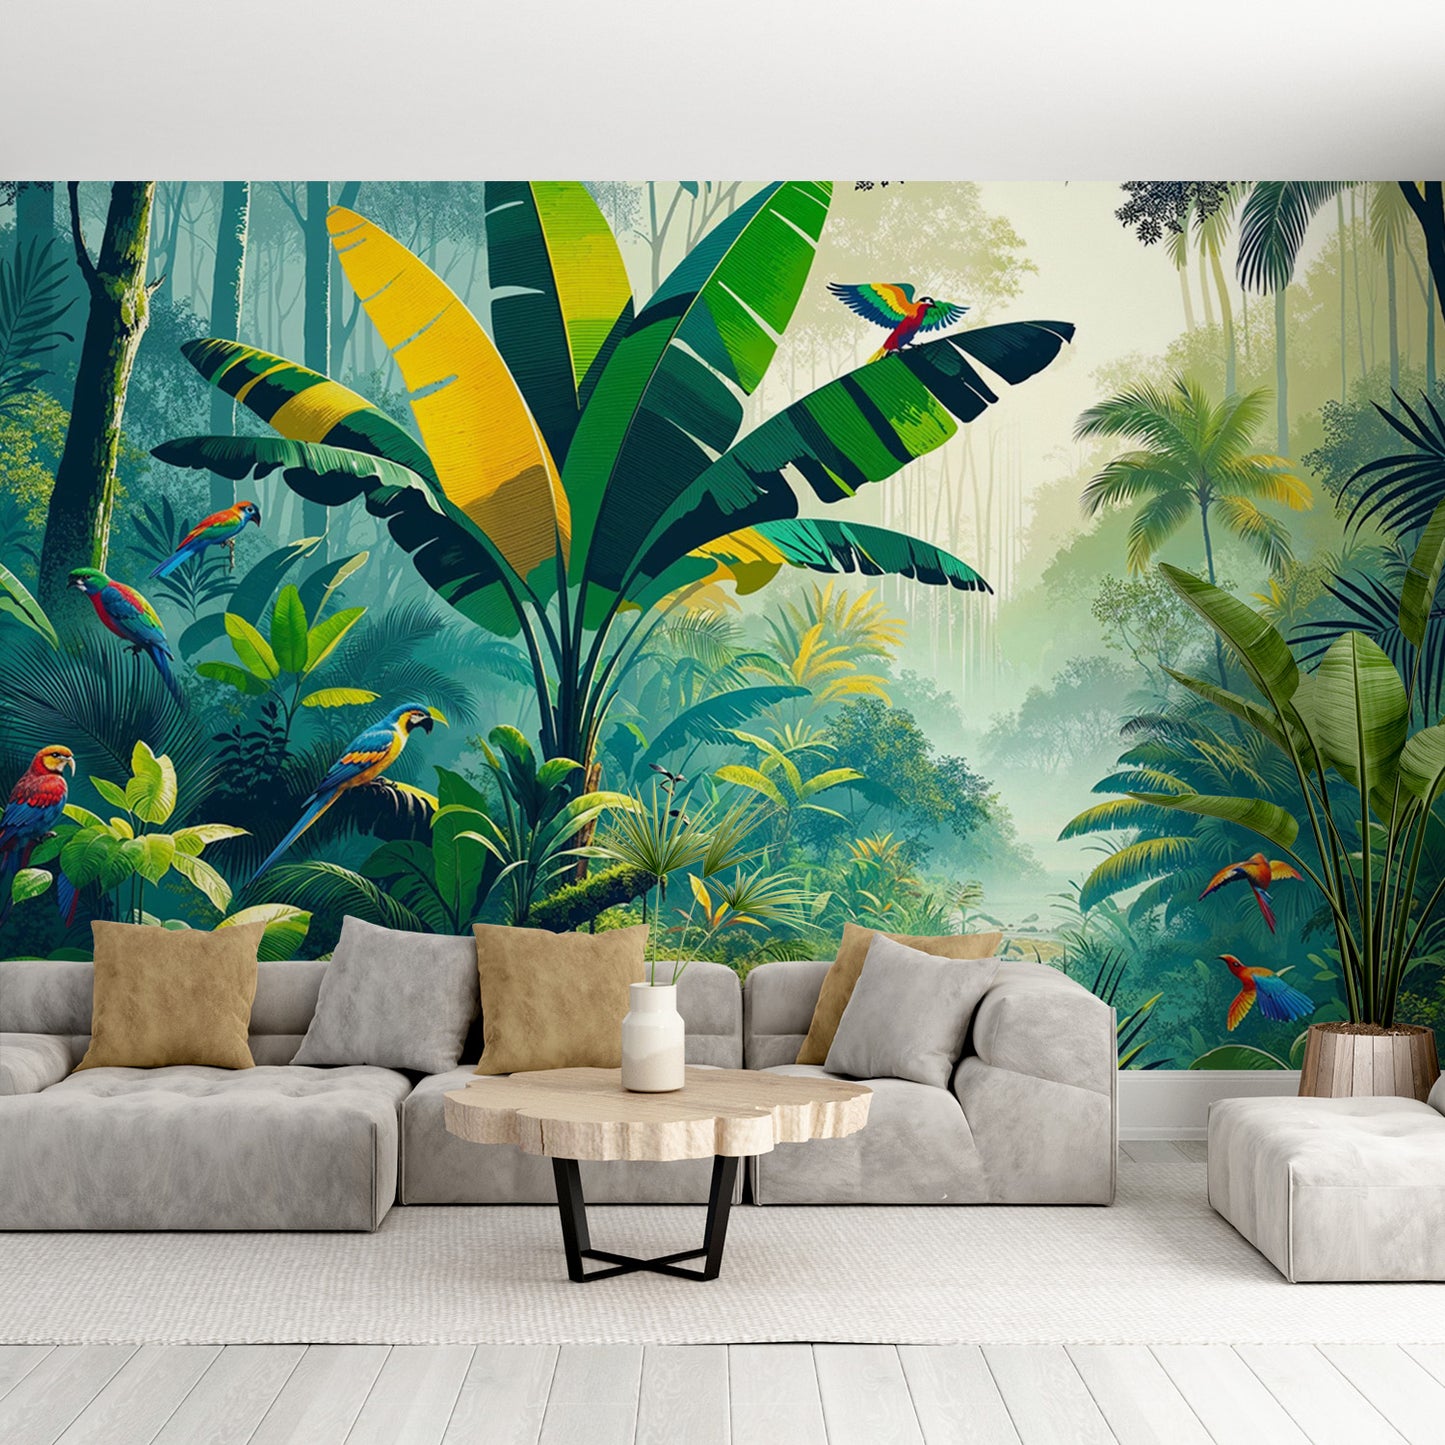 Papier peint jungle tropical | Perroquets imaginaires, feuillages verts et jaunes